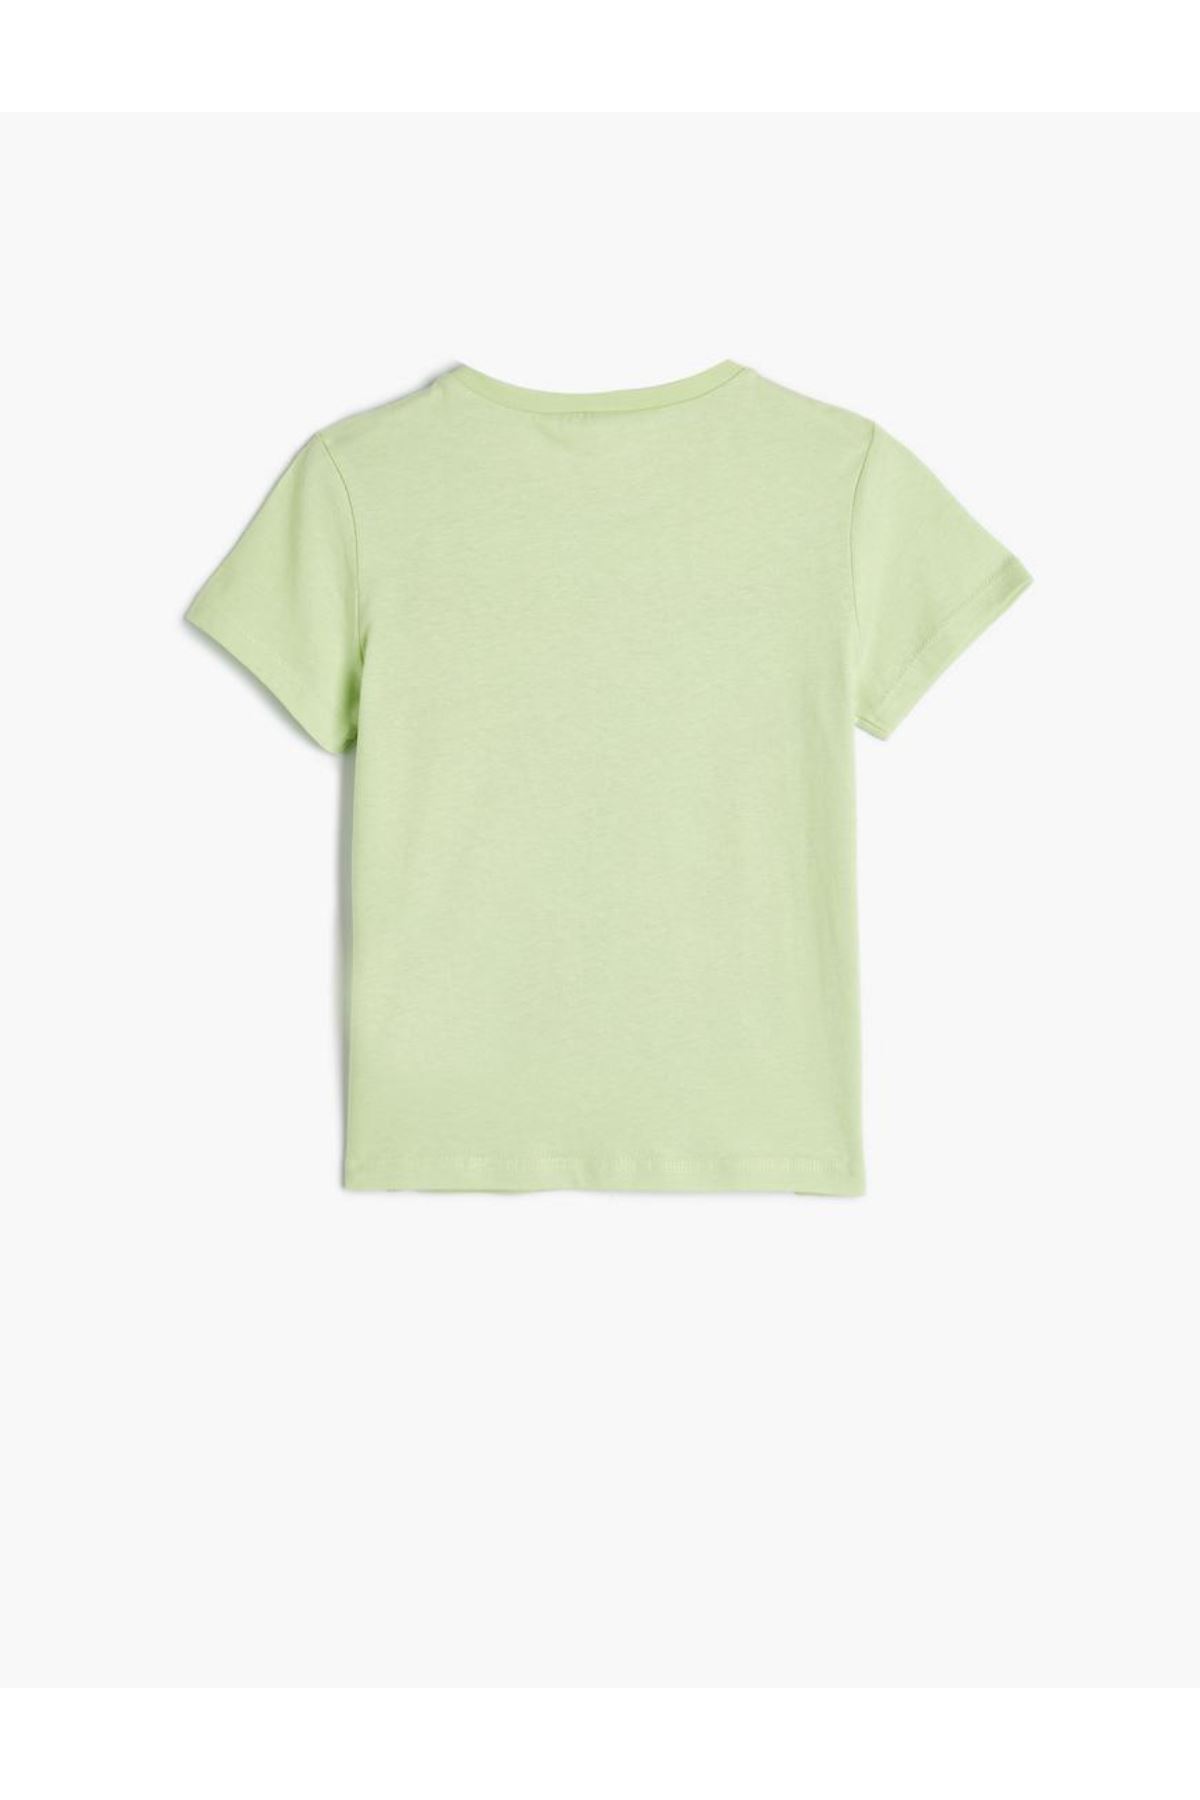 Koton Kız Çocuk Yeşil Tişört - 4SKG10031AK